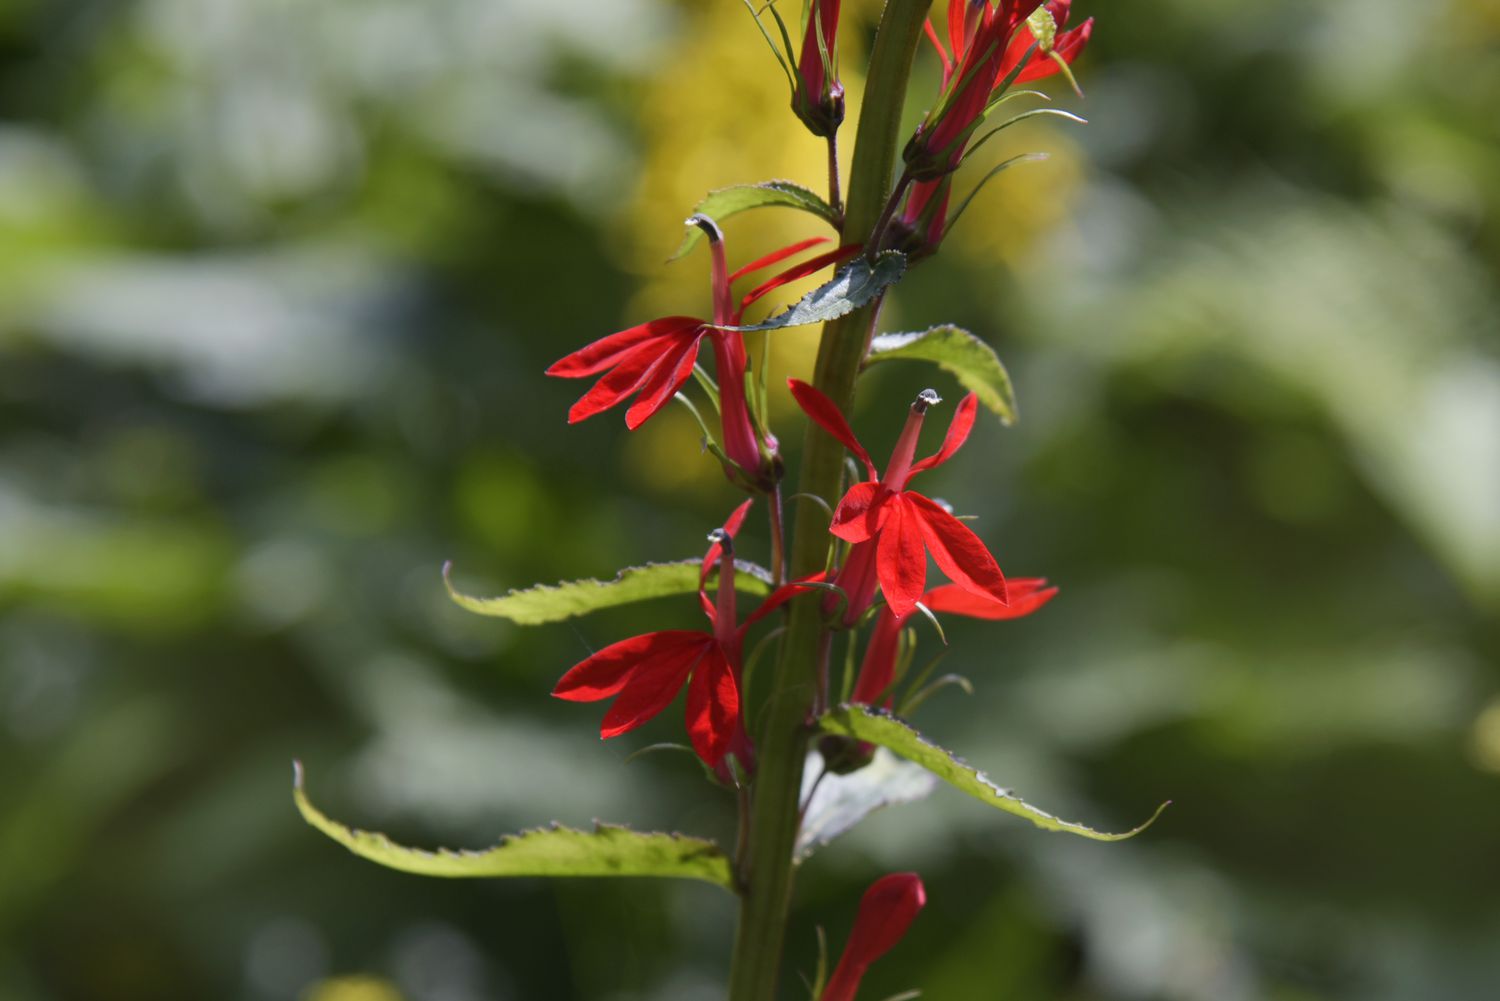 Kardinalblume mit kleinen roten Blüten, um Kolibris anzulocken